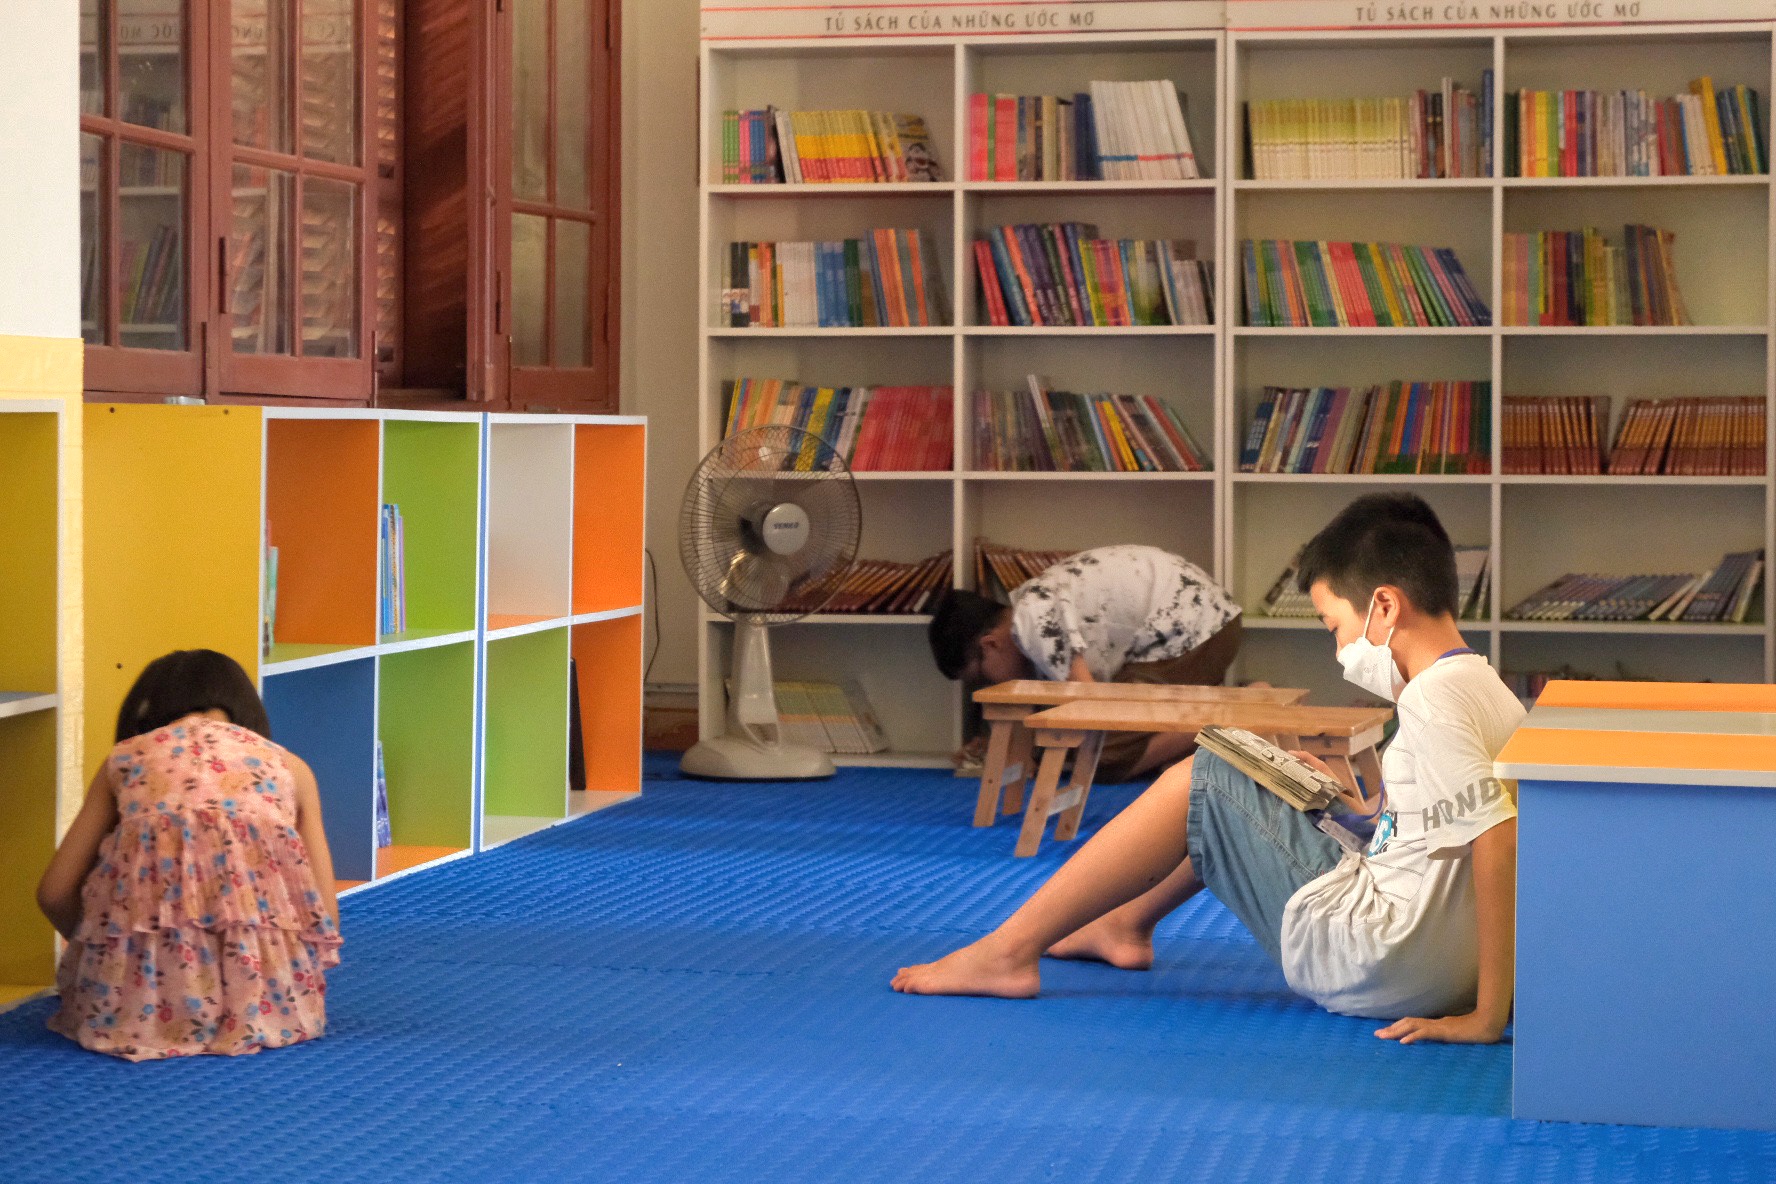 Các em nhỏ chăm chú đọc sách tại thư viện Tổng hợp tỉnh Thừa Thiên Huế, nơi hiện đang trưng bày những tác phẩm tranh vẽ trên áo dài.